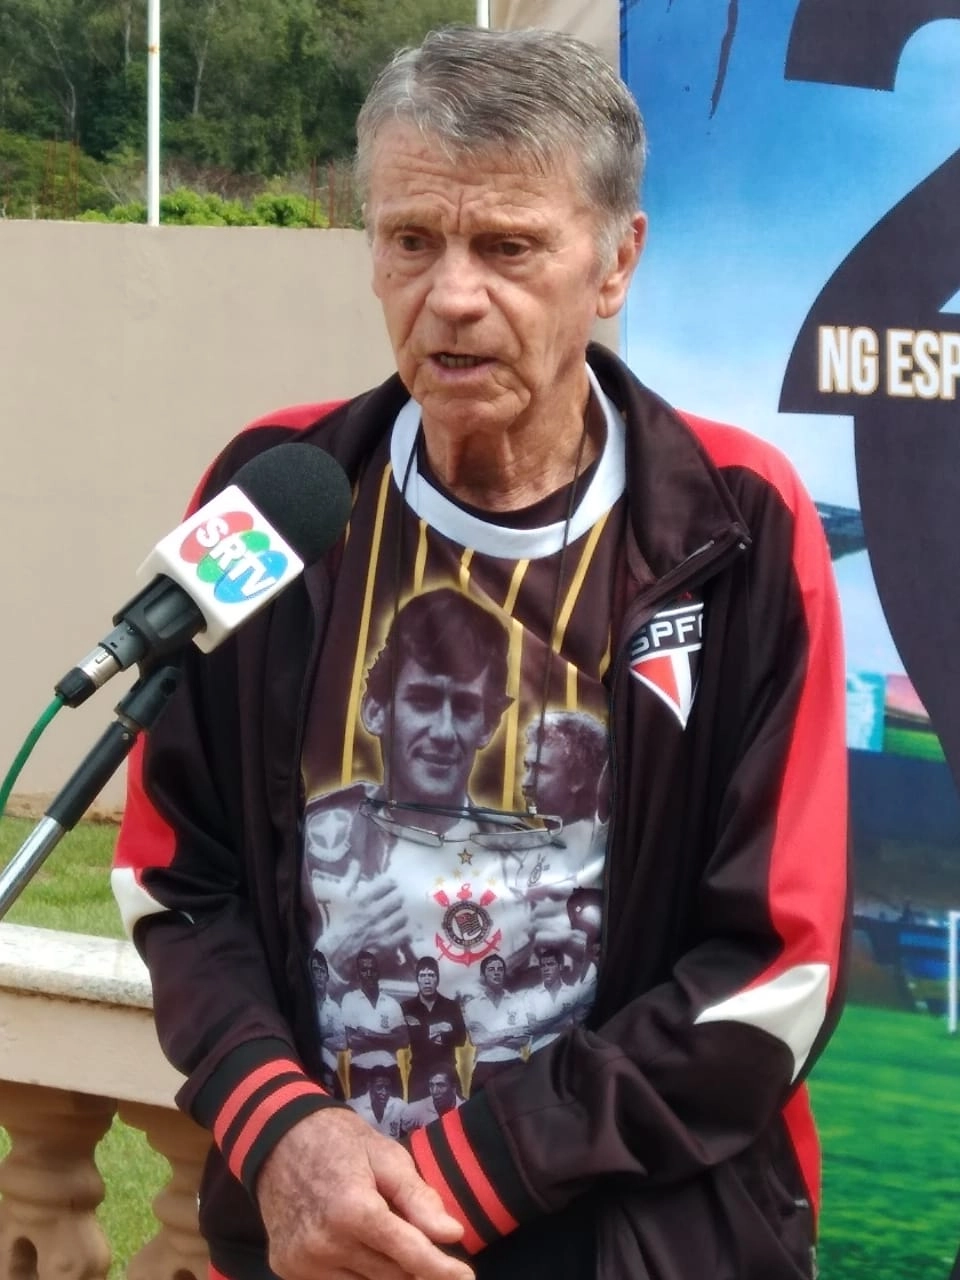 Sendo entrevistado pela SRTV. Reparem que ele veste uma camiseta de Ayrton Senna, alusiva ao Corinthians e um agasalho do São Paulo, demonstrando o coração dividido do ex-jogador pelos clubes que defendeu. Foto: Divulgação